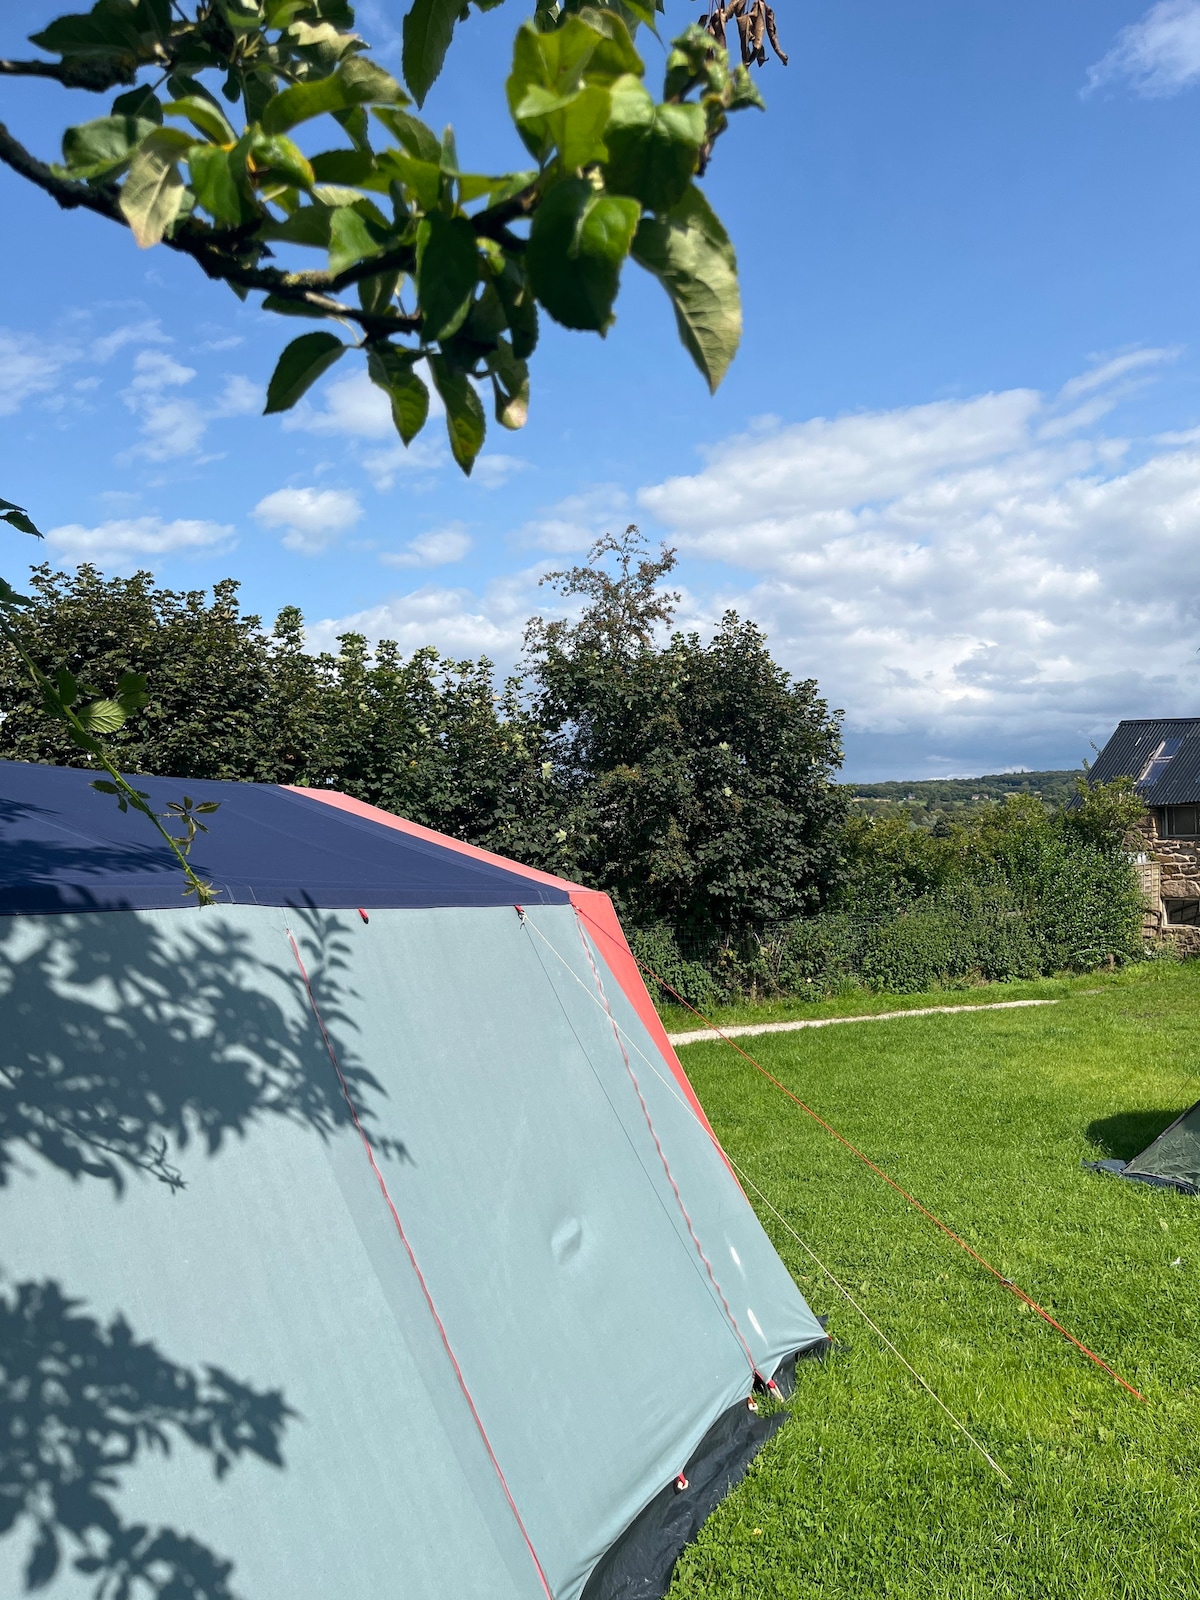 Retro Tent on Matlock hillside